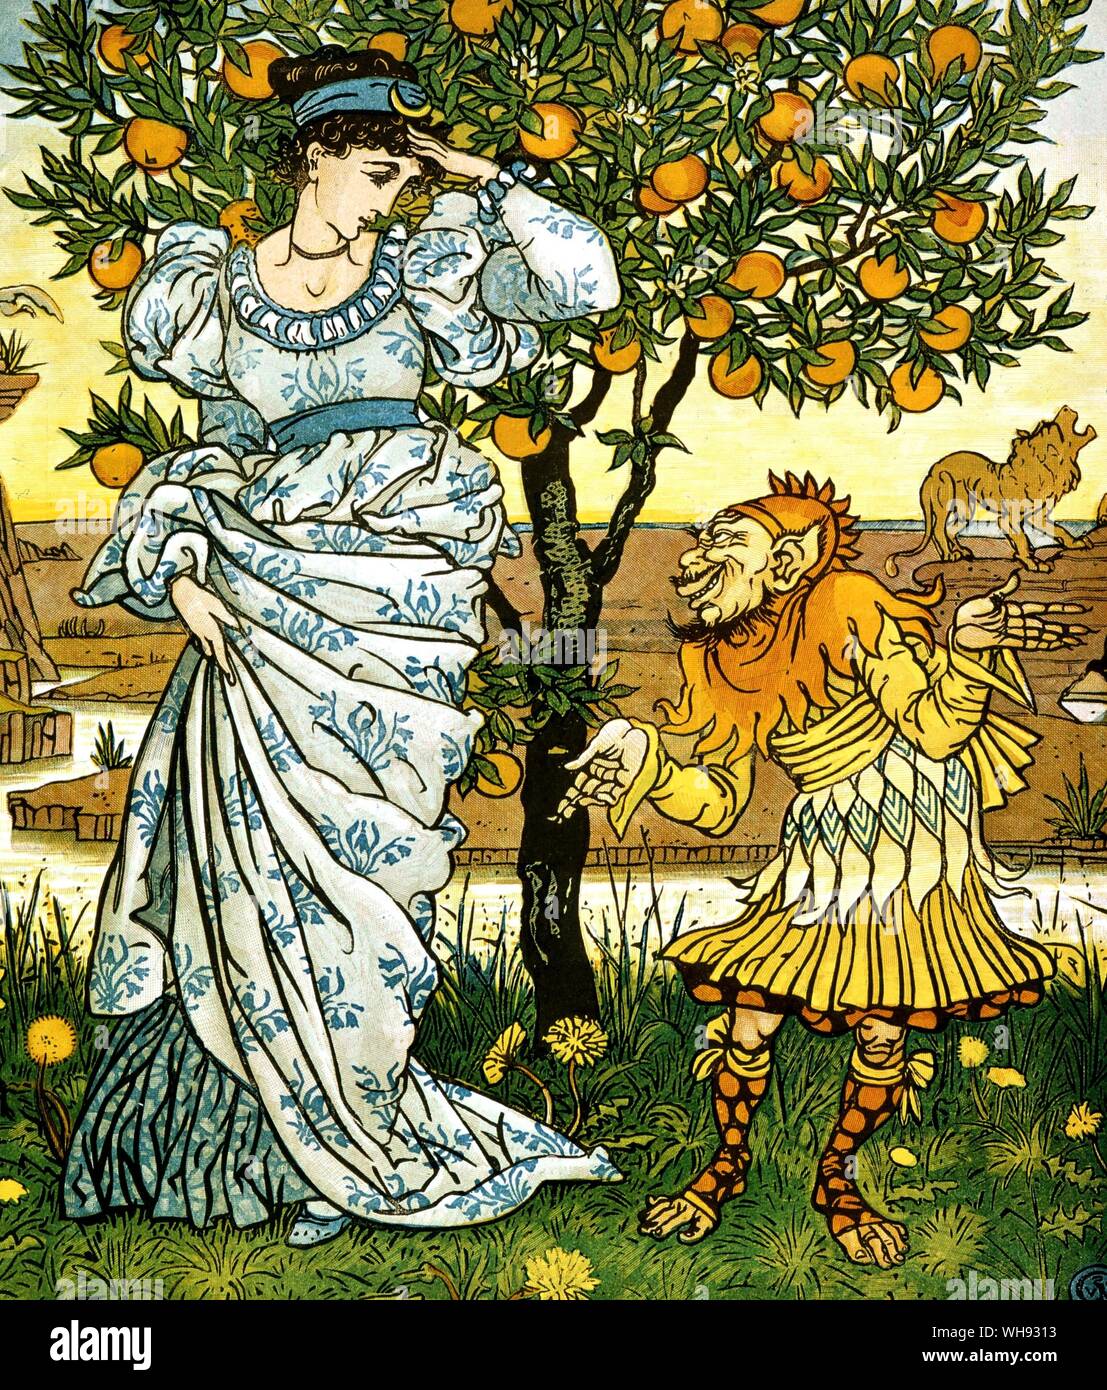 El enanismo amarillo de la historia. Ilustración de Walter Crane, 1876. "Observar bien mi princesa, antes de darme su palabra", dijo el enano amarillo. Foto de stock